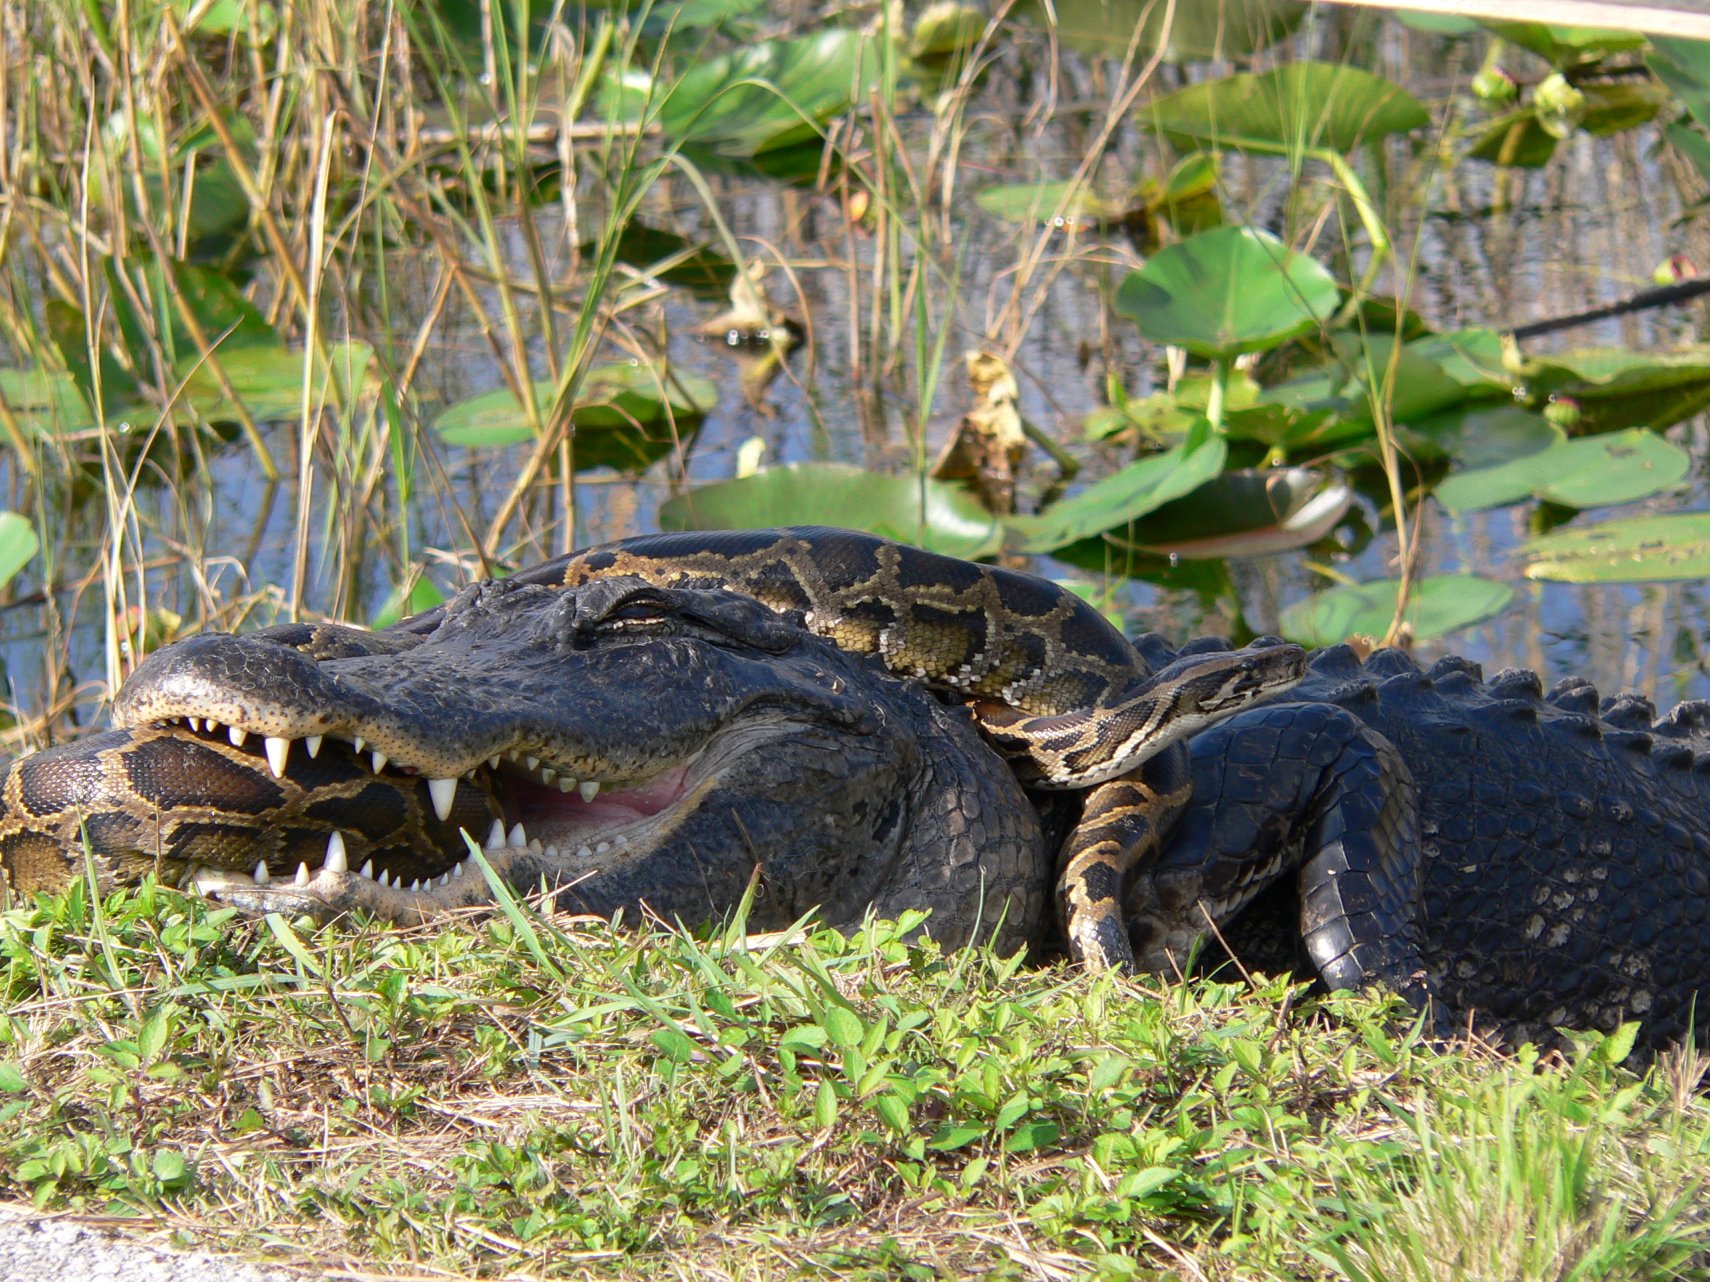 Invasive species wreaking havoc on the Florida Everglades